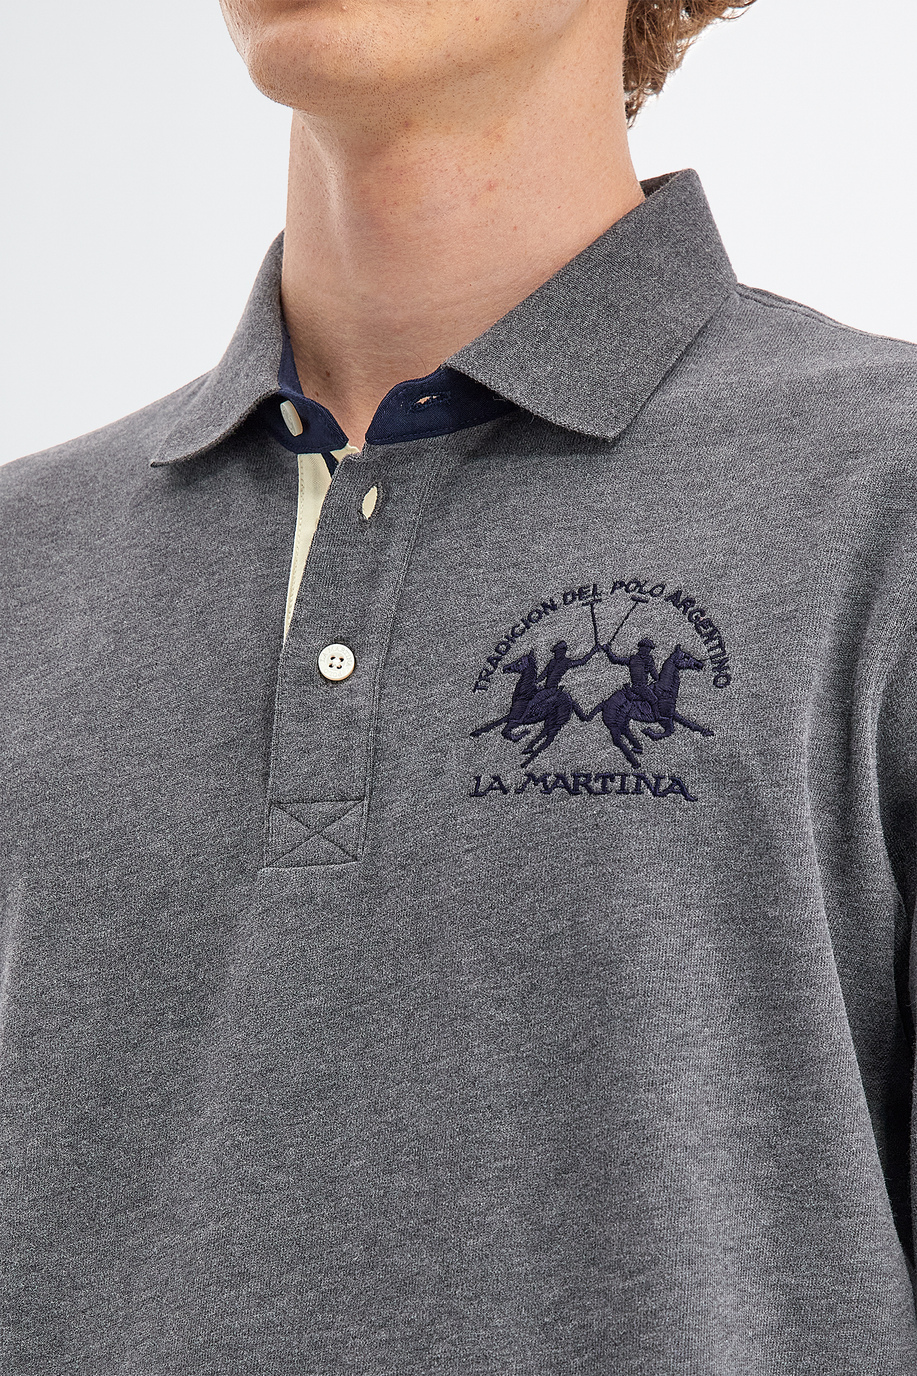 Herren-Poloshirt aus Baumwolljersey mit langen Ärmeln - Geschenke unter CHF 175 für ihn | La Martina - Official Online Shop